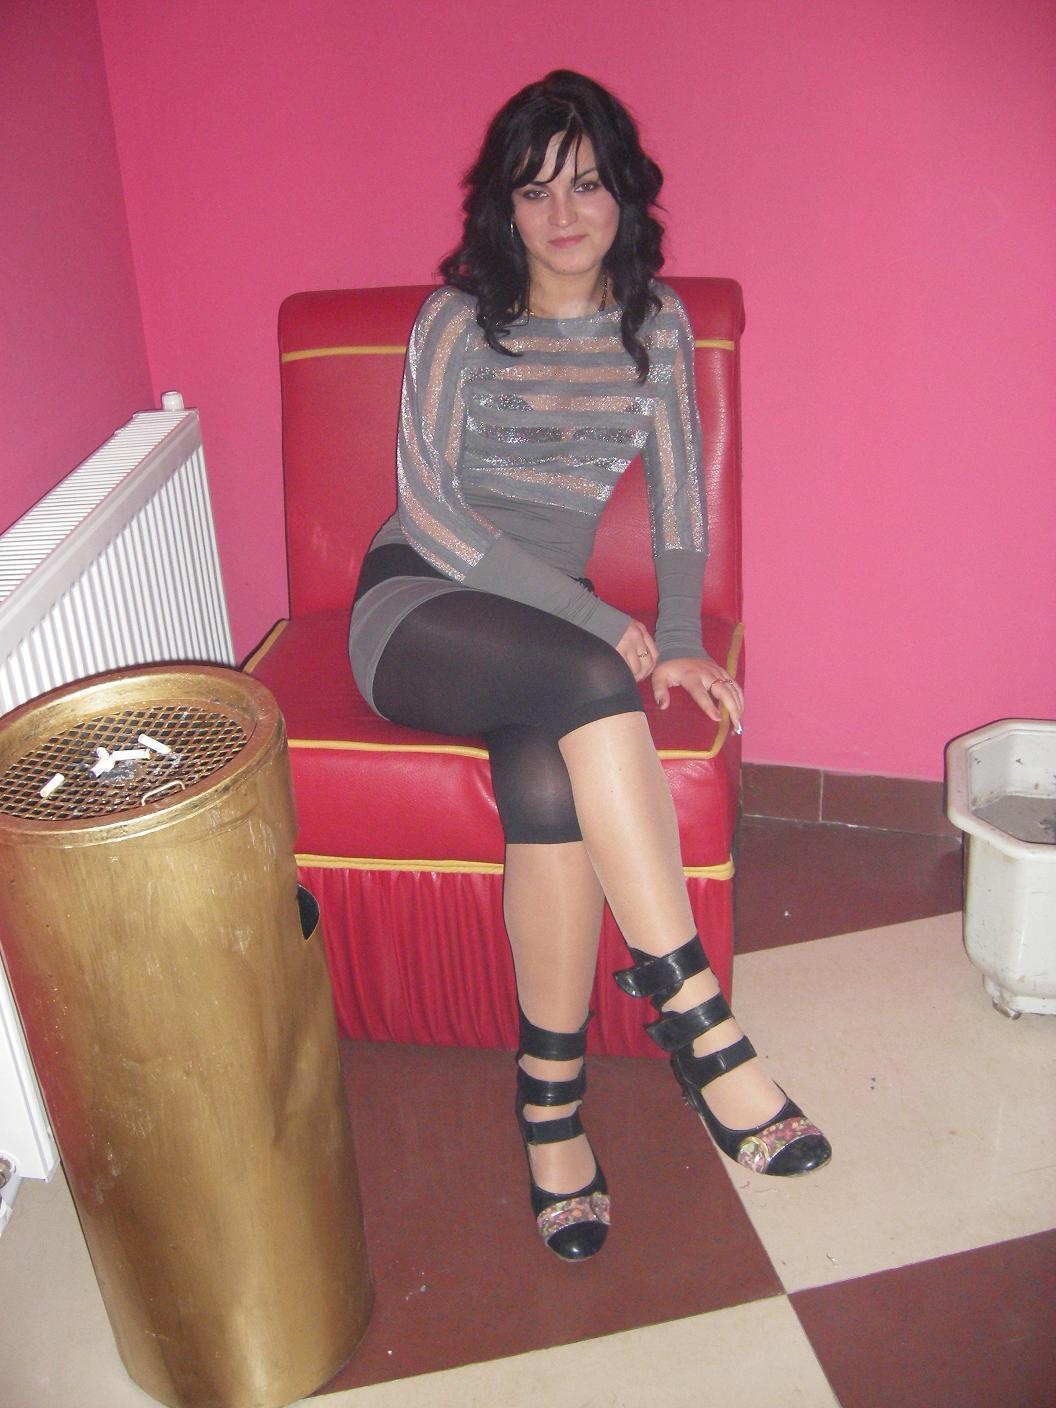 http://2.bp.blogspot.com/-vslDp5rdIXg/T_prx49aosI/AAAAAAAABd4/8-nMmAuPnv0/s1600/sexy+young+girl++legs+in+sheer+leggings.jpg